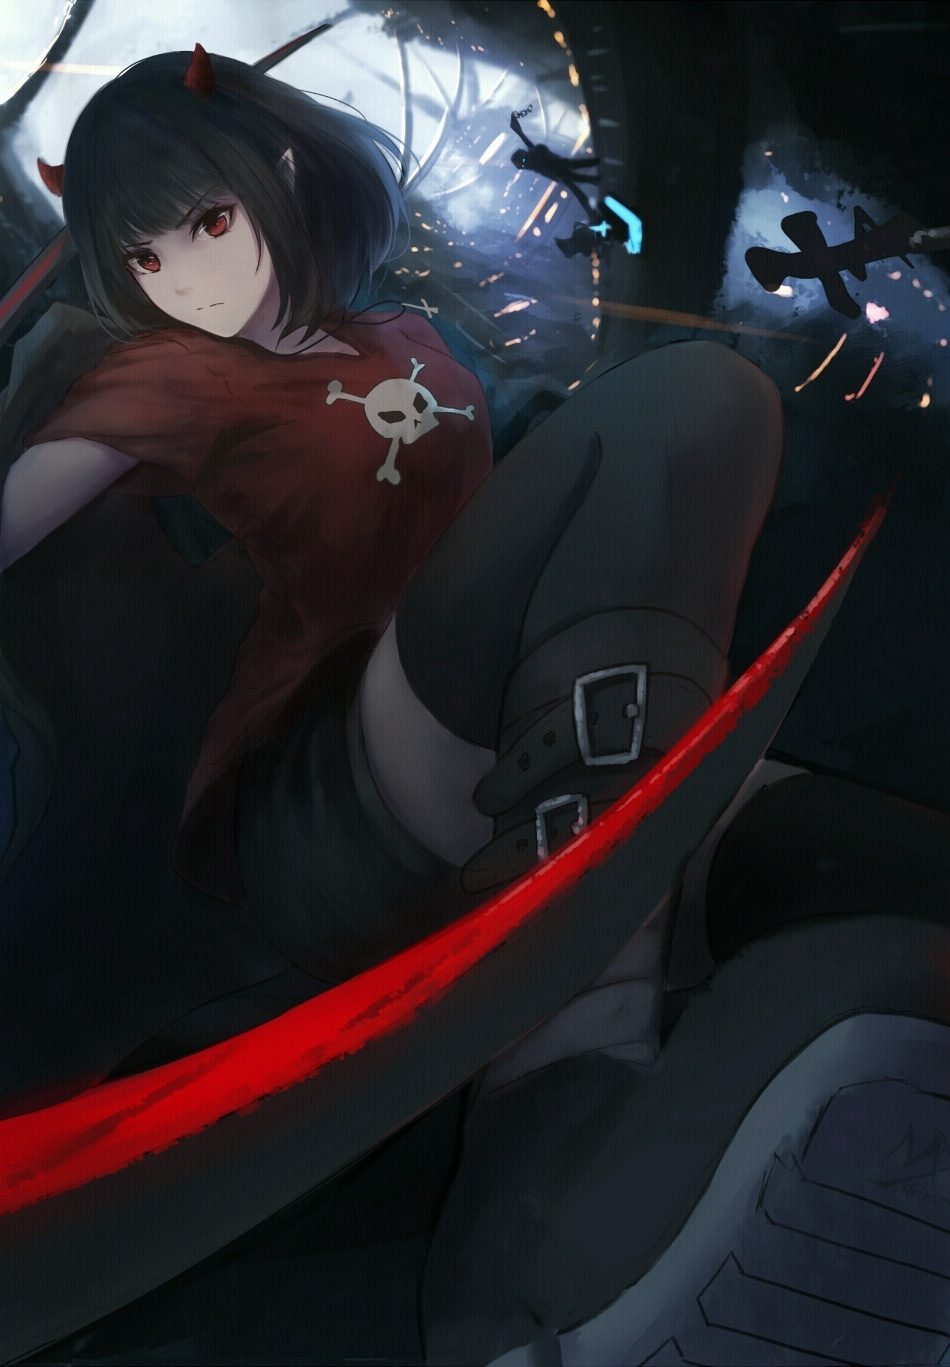 Anime Girl Fight Dark Wallpaper Full HD